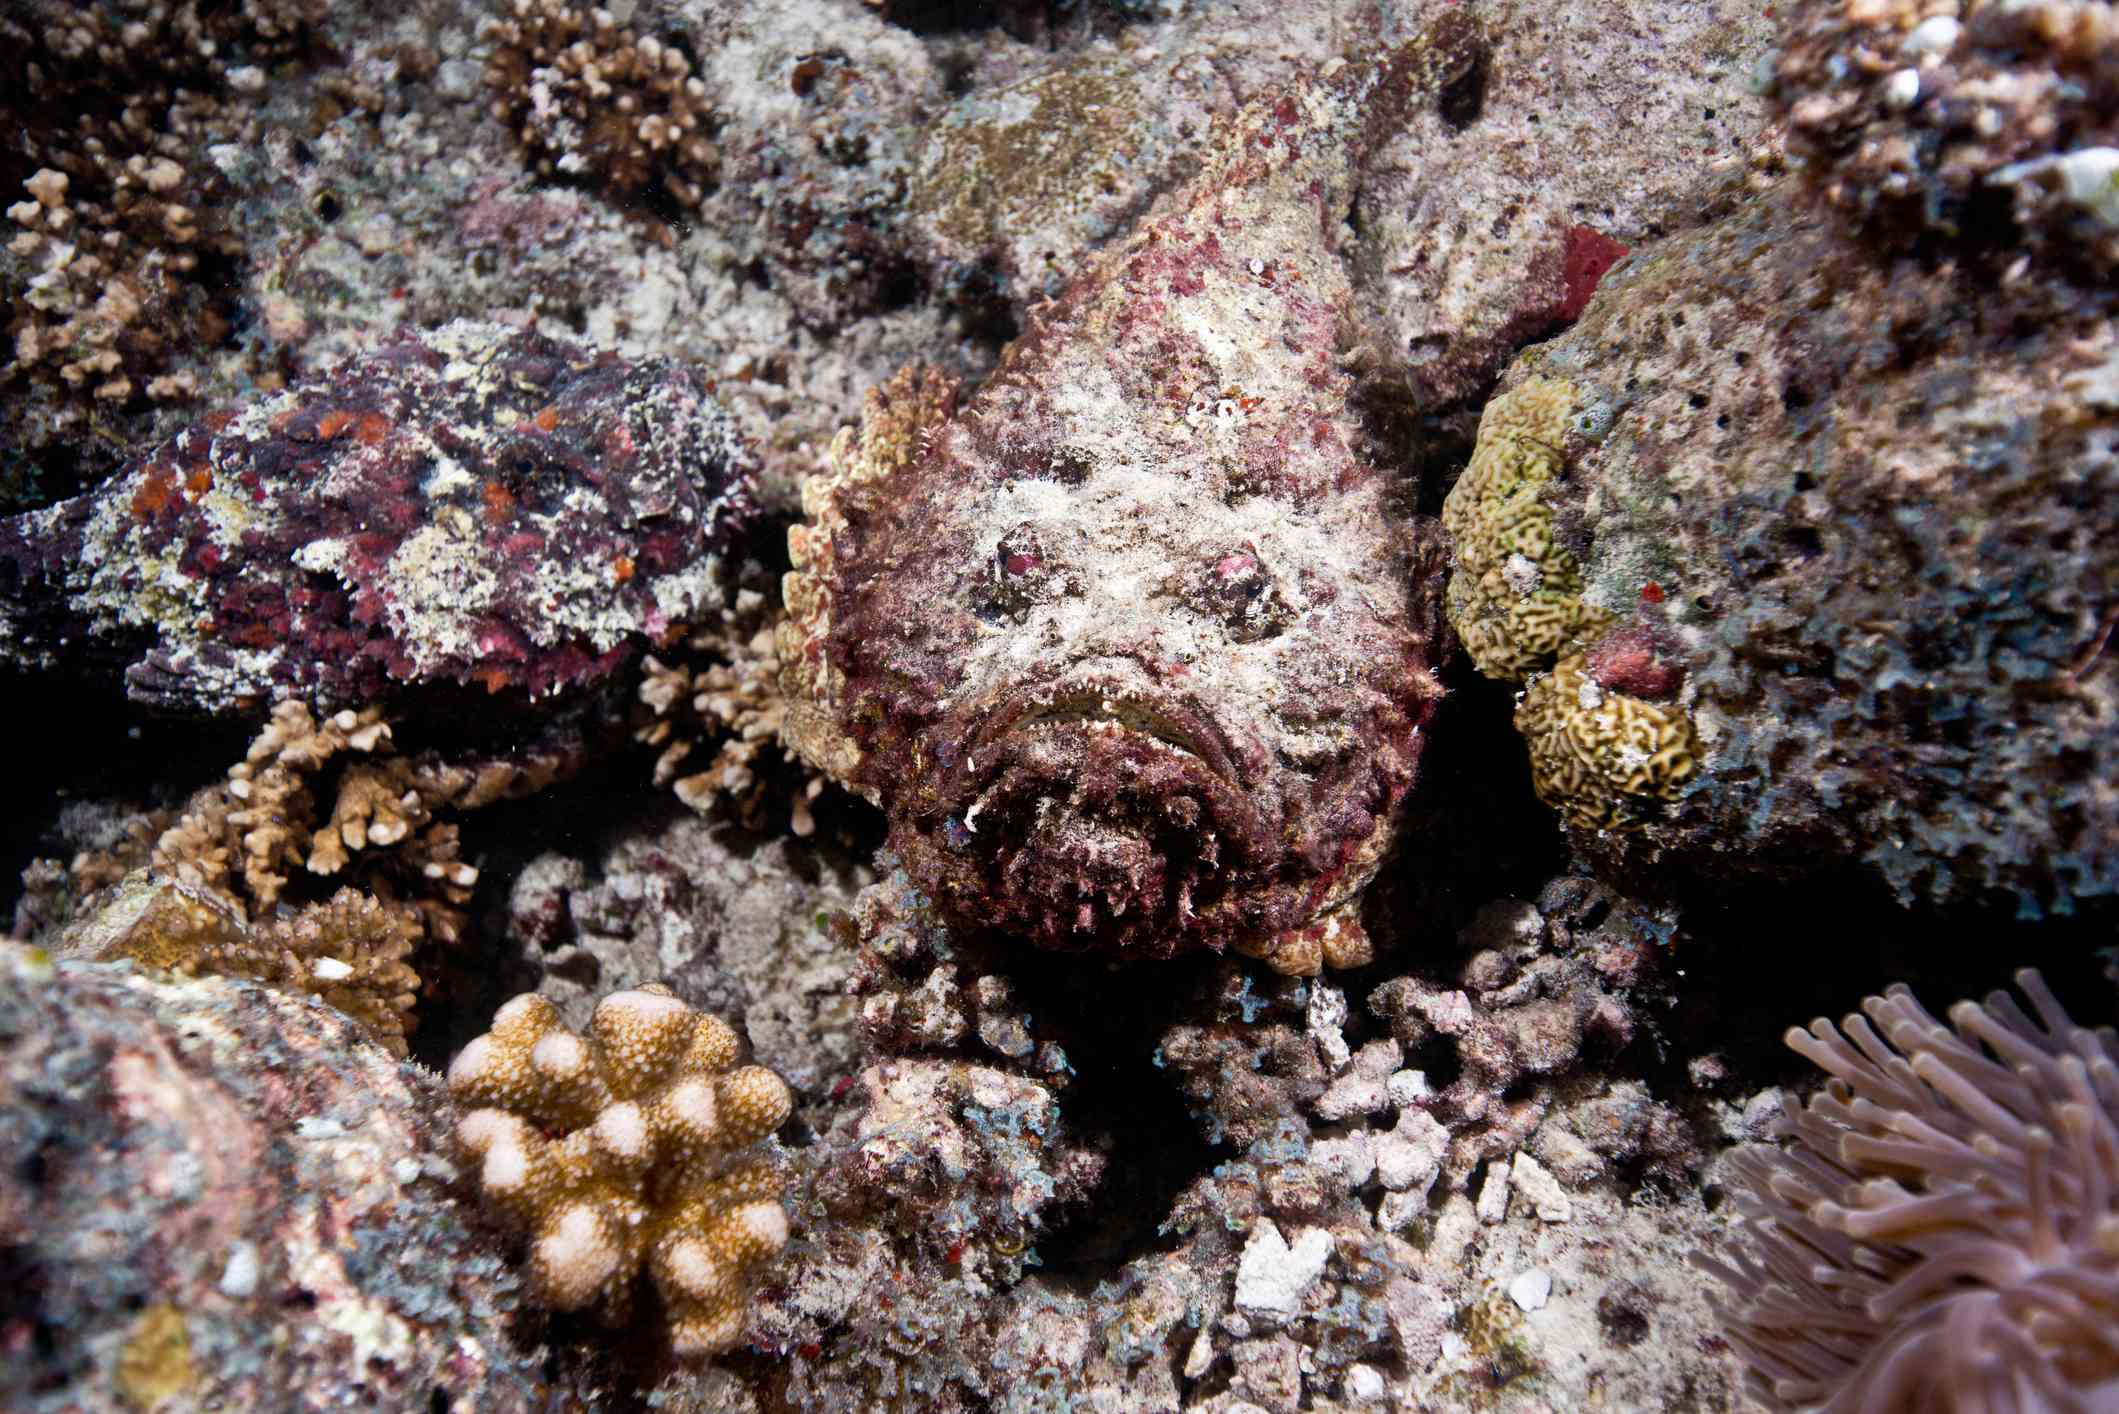 Pez piedra escondido entre corales rojos, dorados y verdes